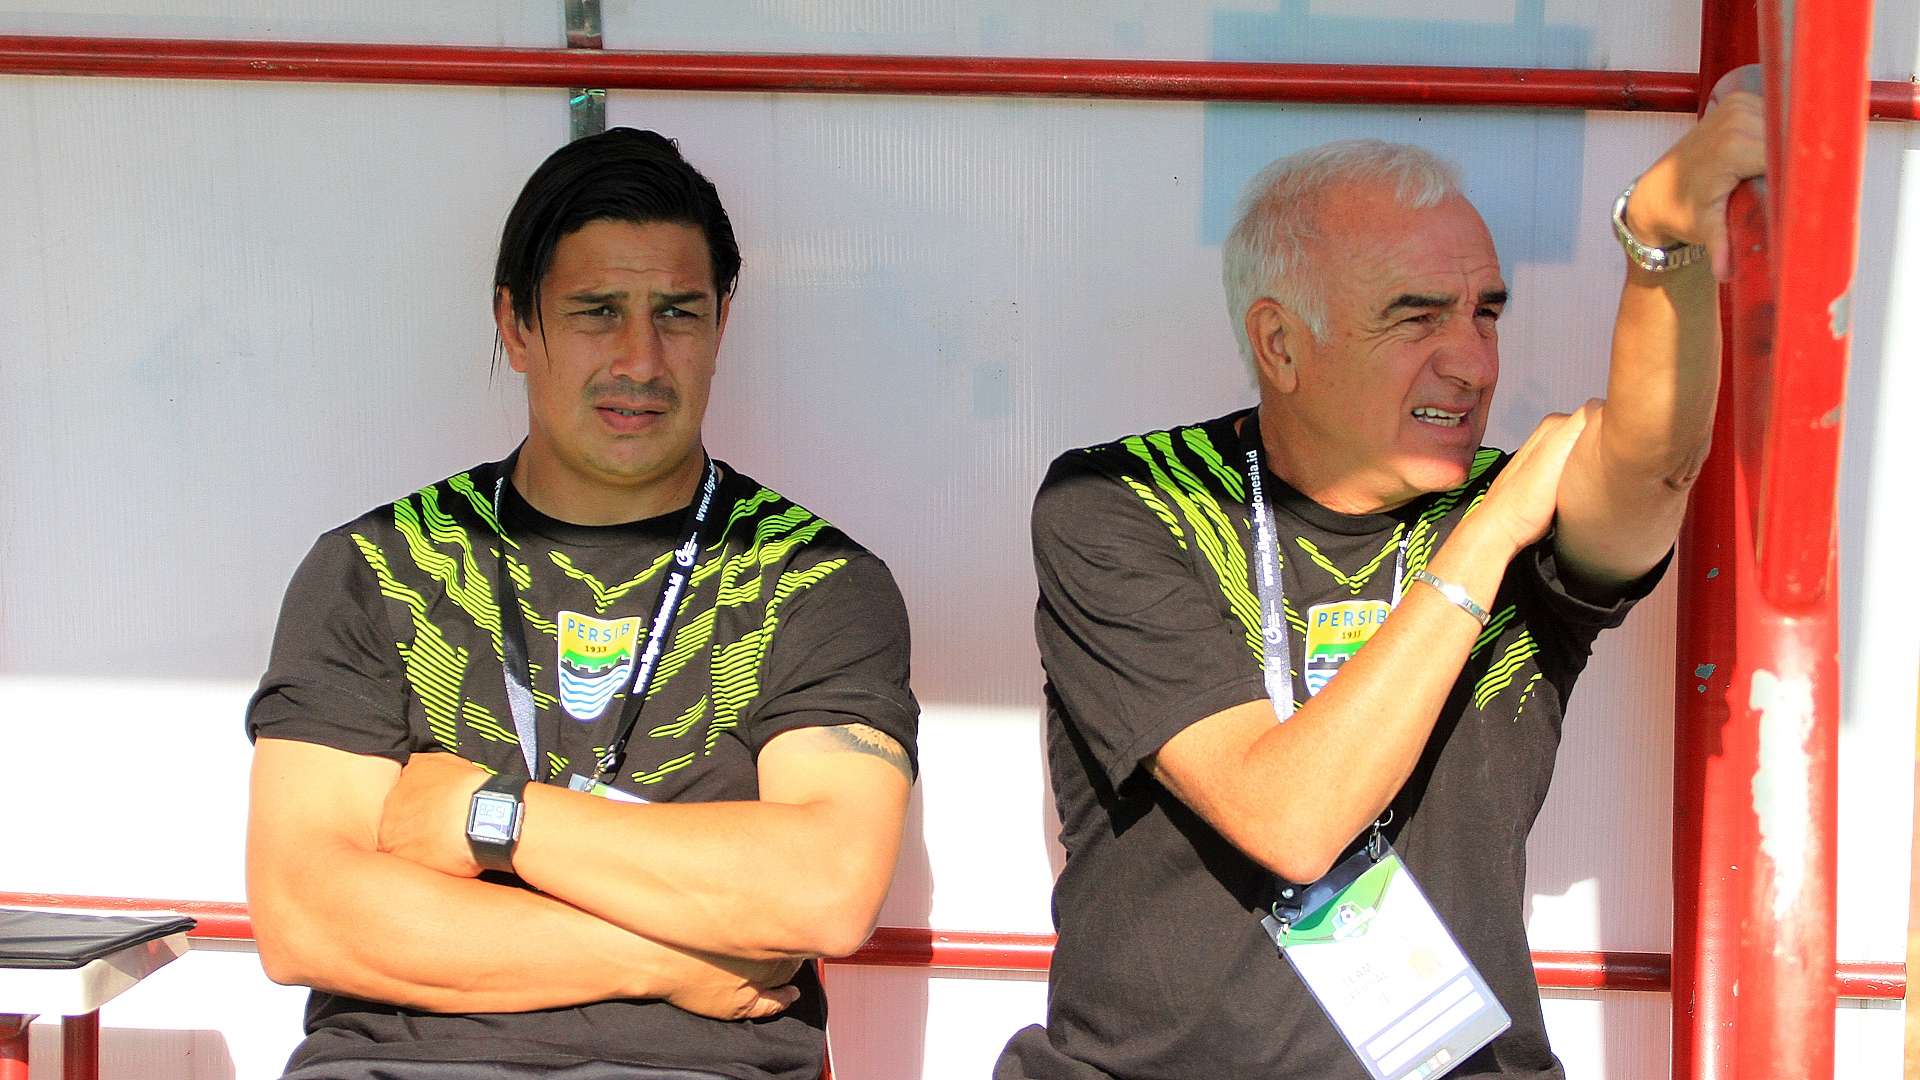 Fernando Soler & Roberto Carlos Mario Gomez - Persib